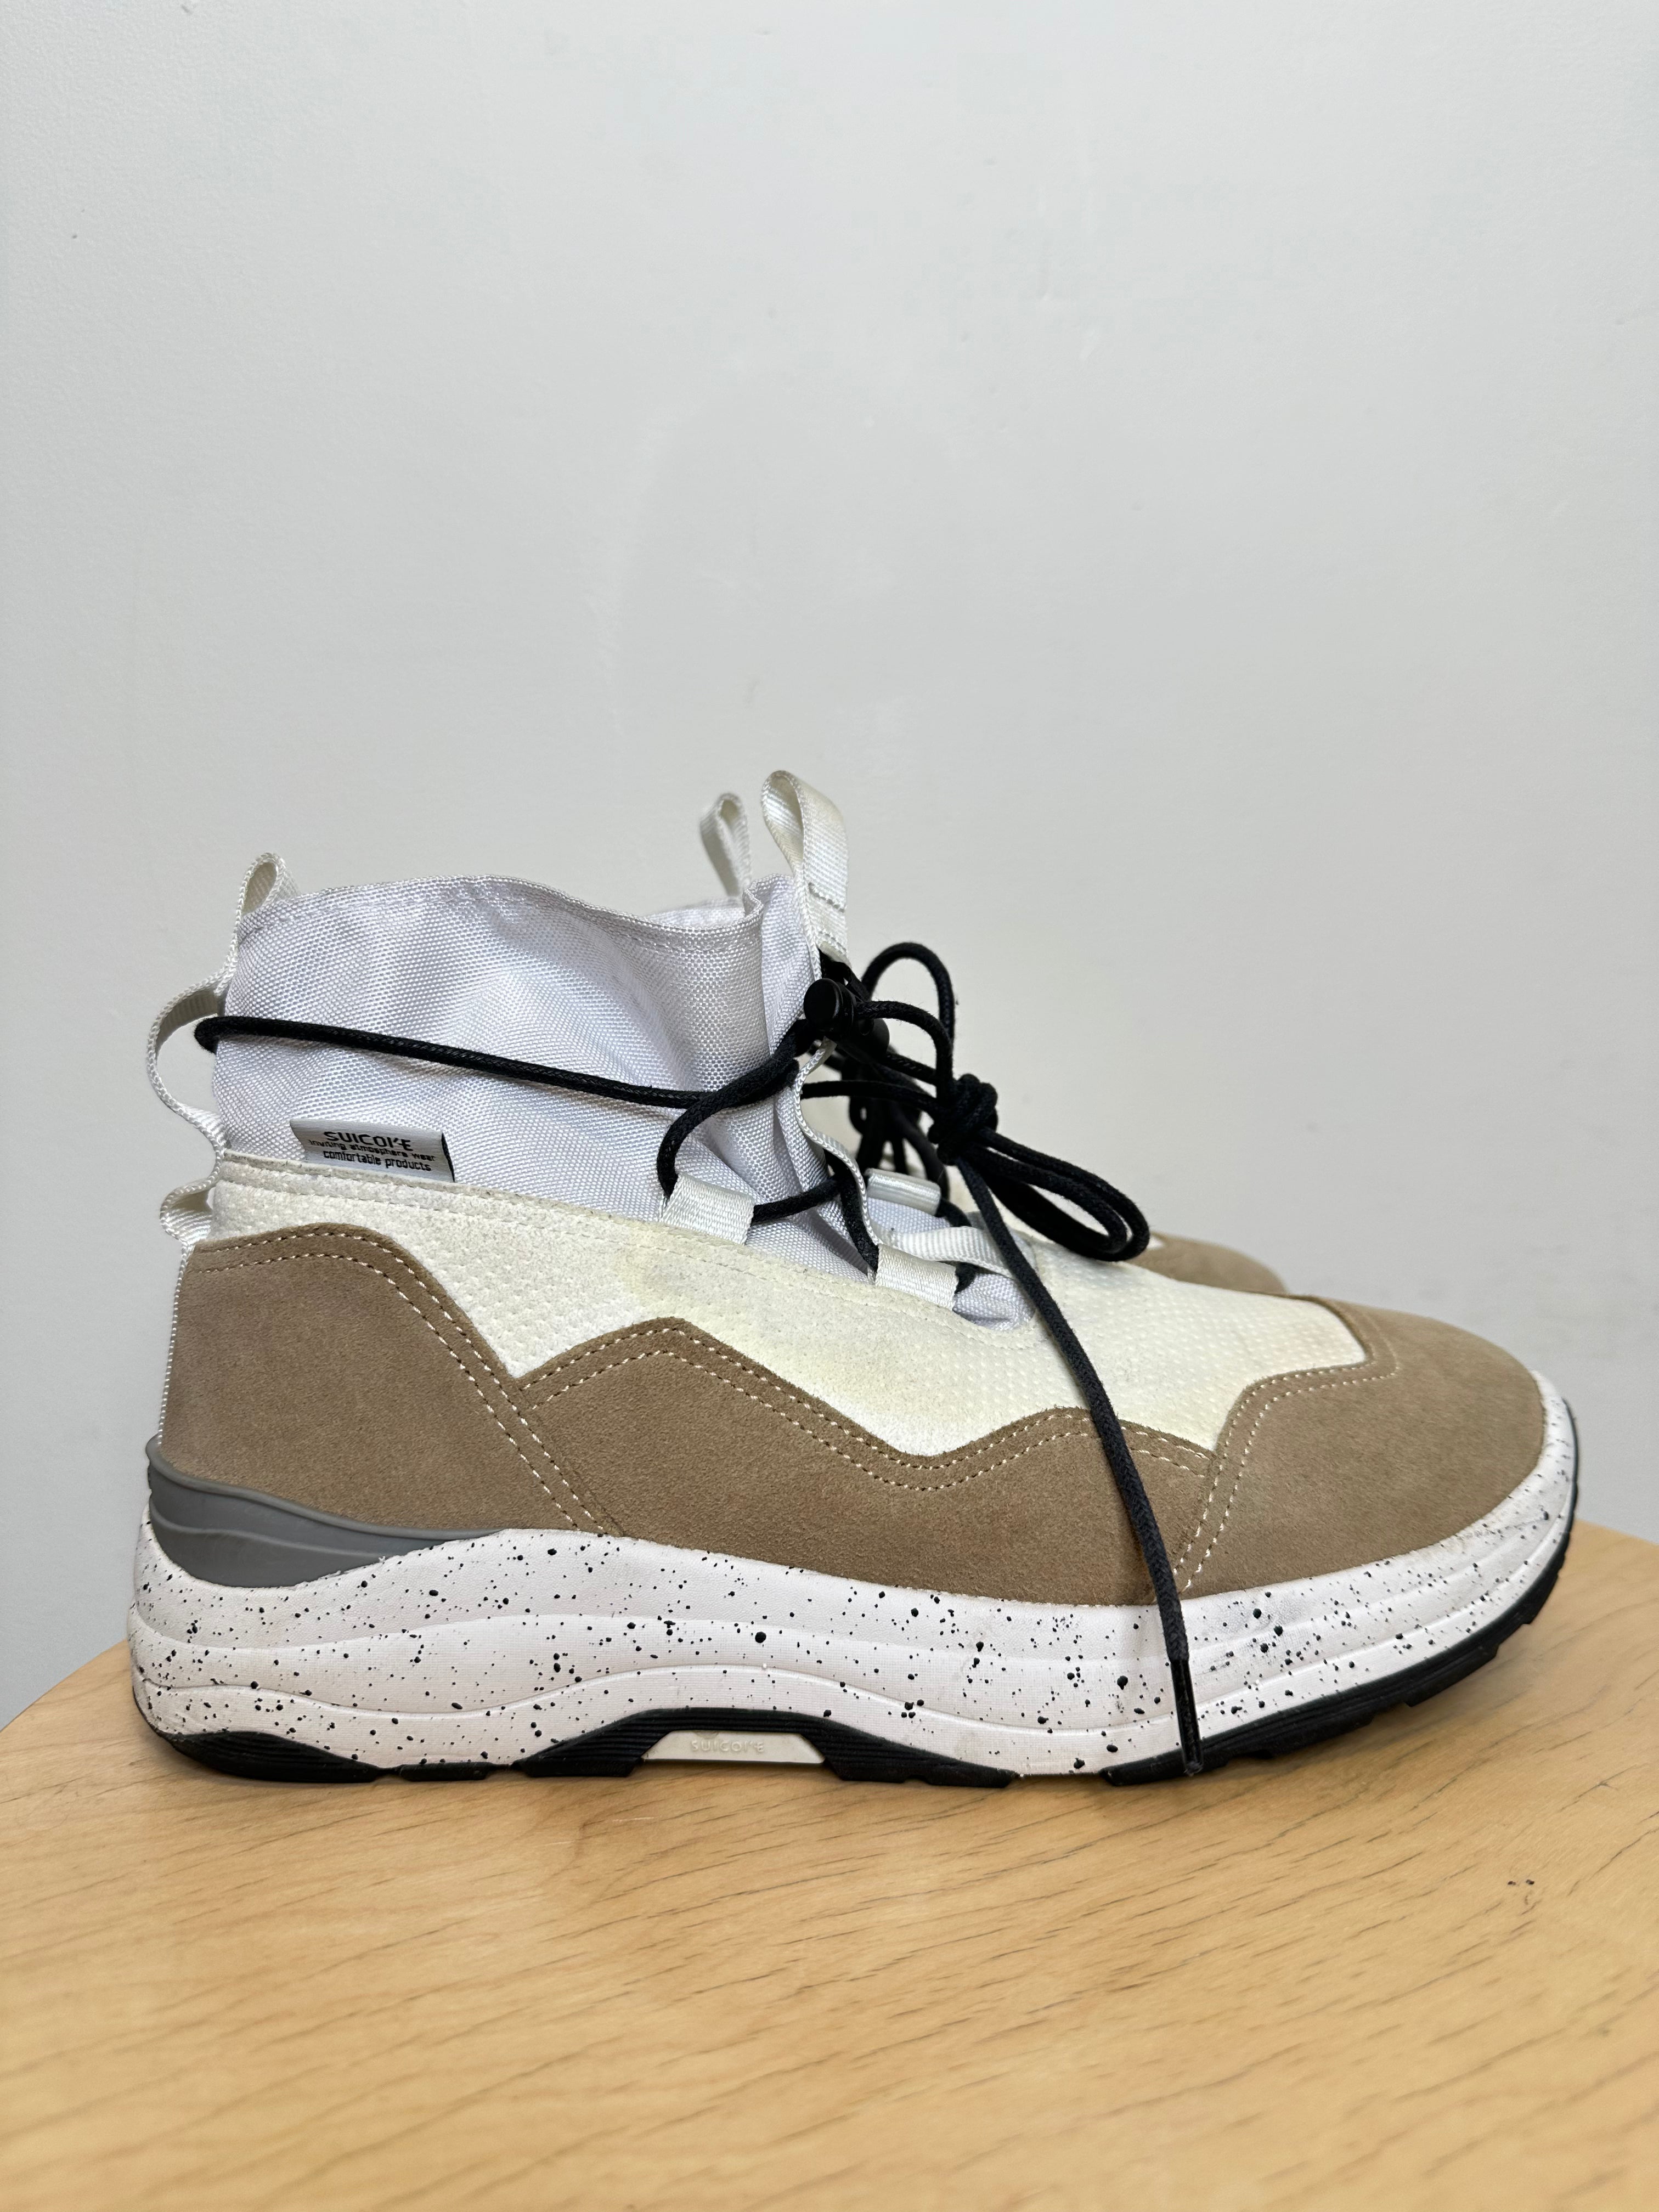 Suicoke Cream/Beige Sneakers - W9.5